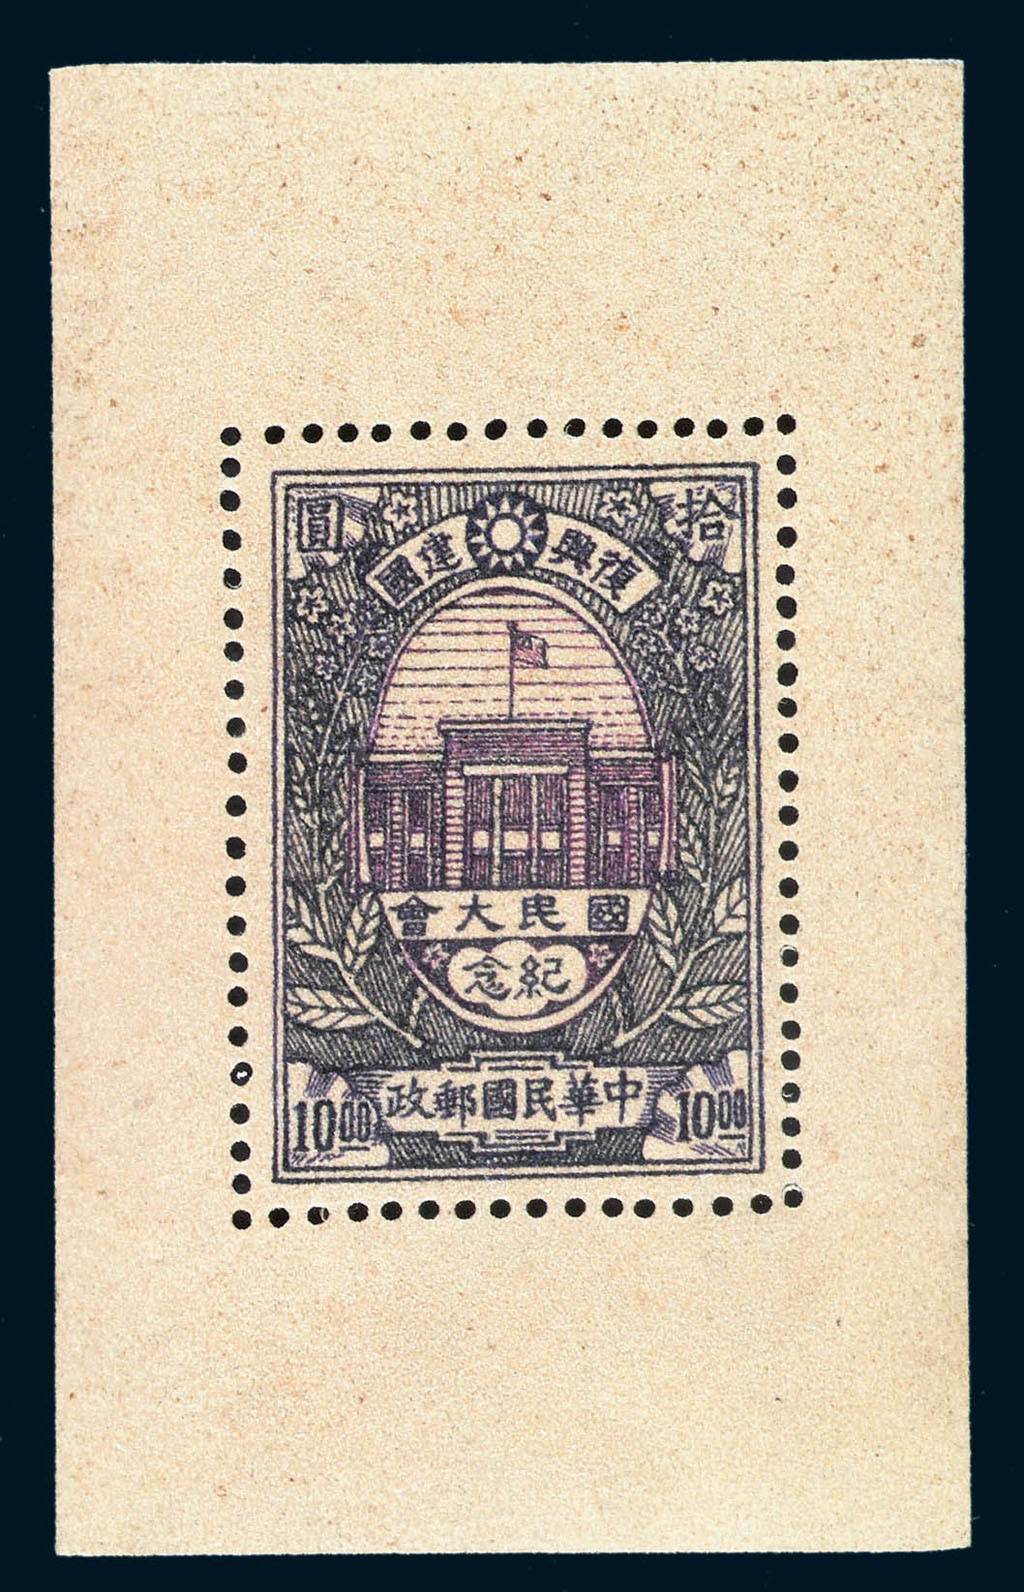 S 1946年中华民国邮政“国民大会纪念”邮票未采用设计图稿试印样票一枚